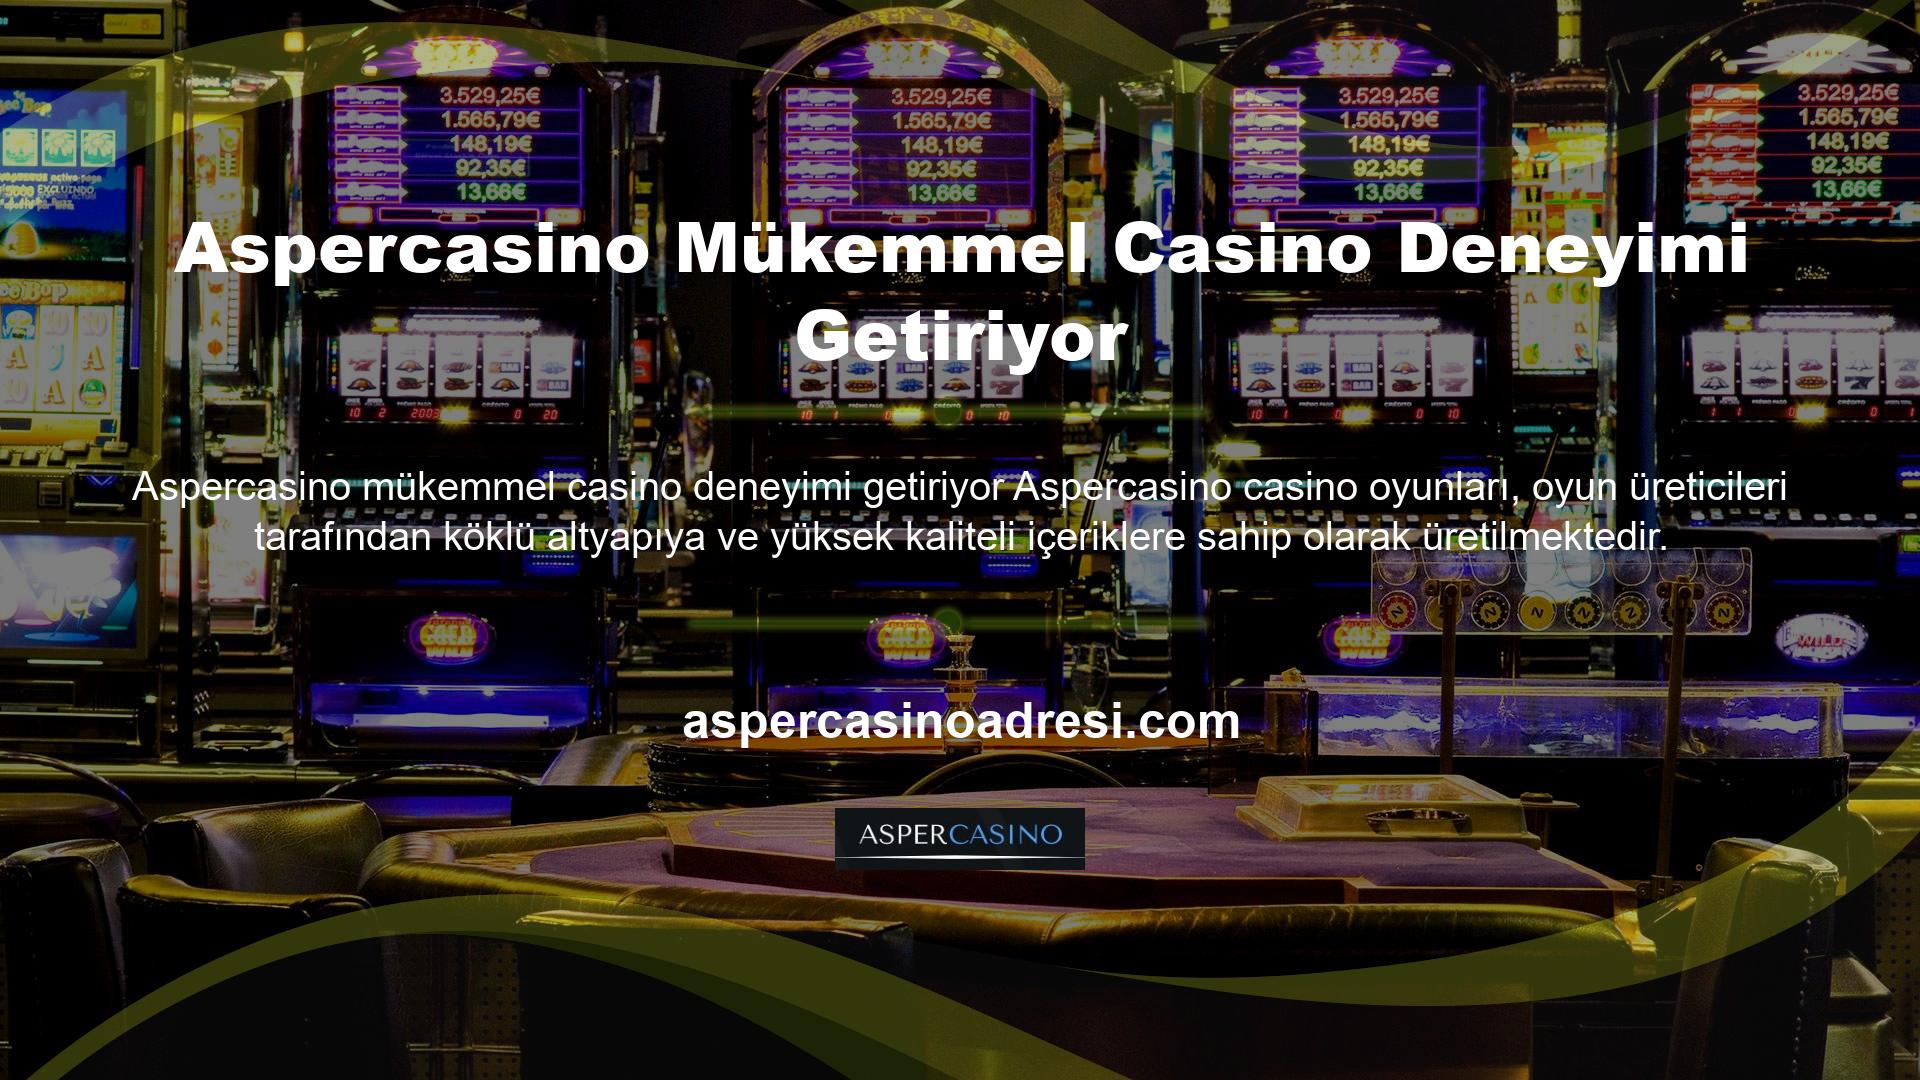 Aspercasino casino oyunları, zamanı geldiğinde çok kazanç sağlayan eğlenceli, yüksek kaliteli oyunlardan oluşur